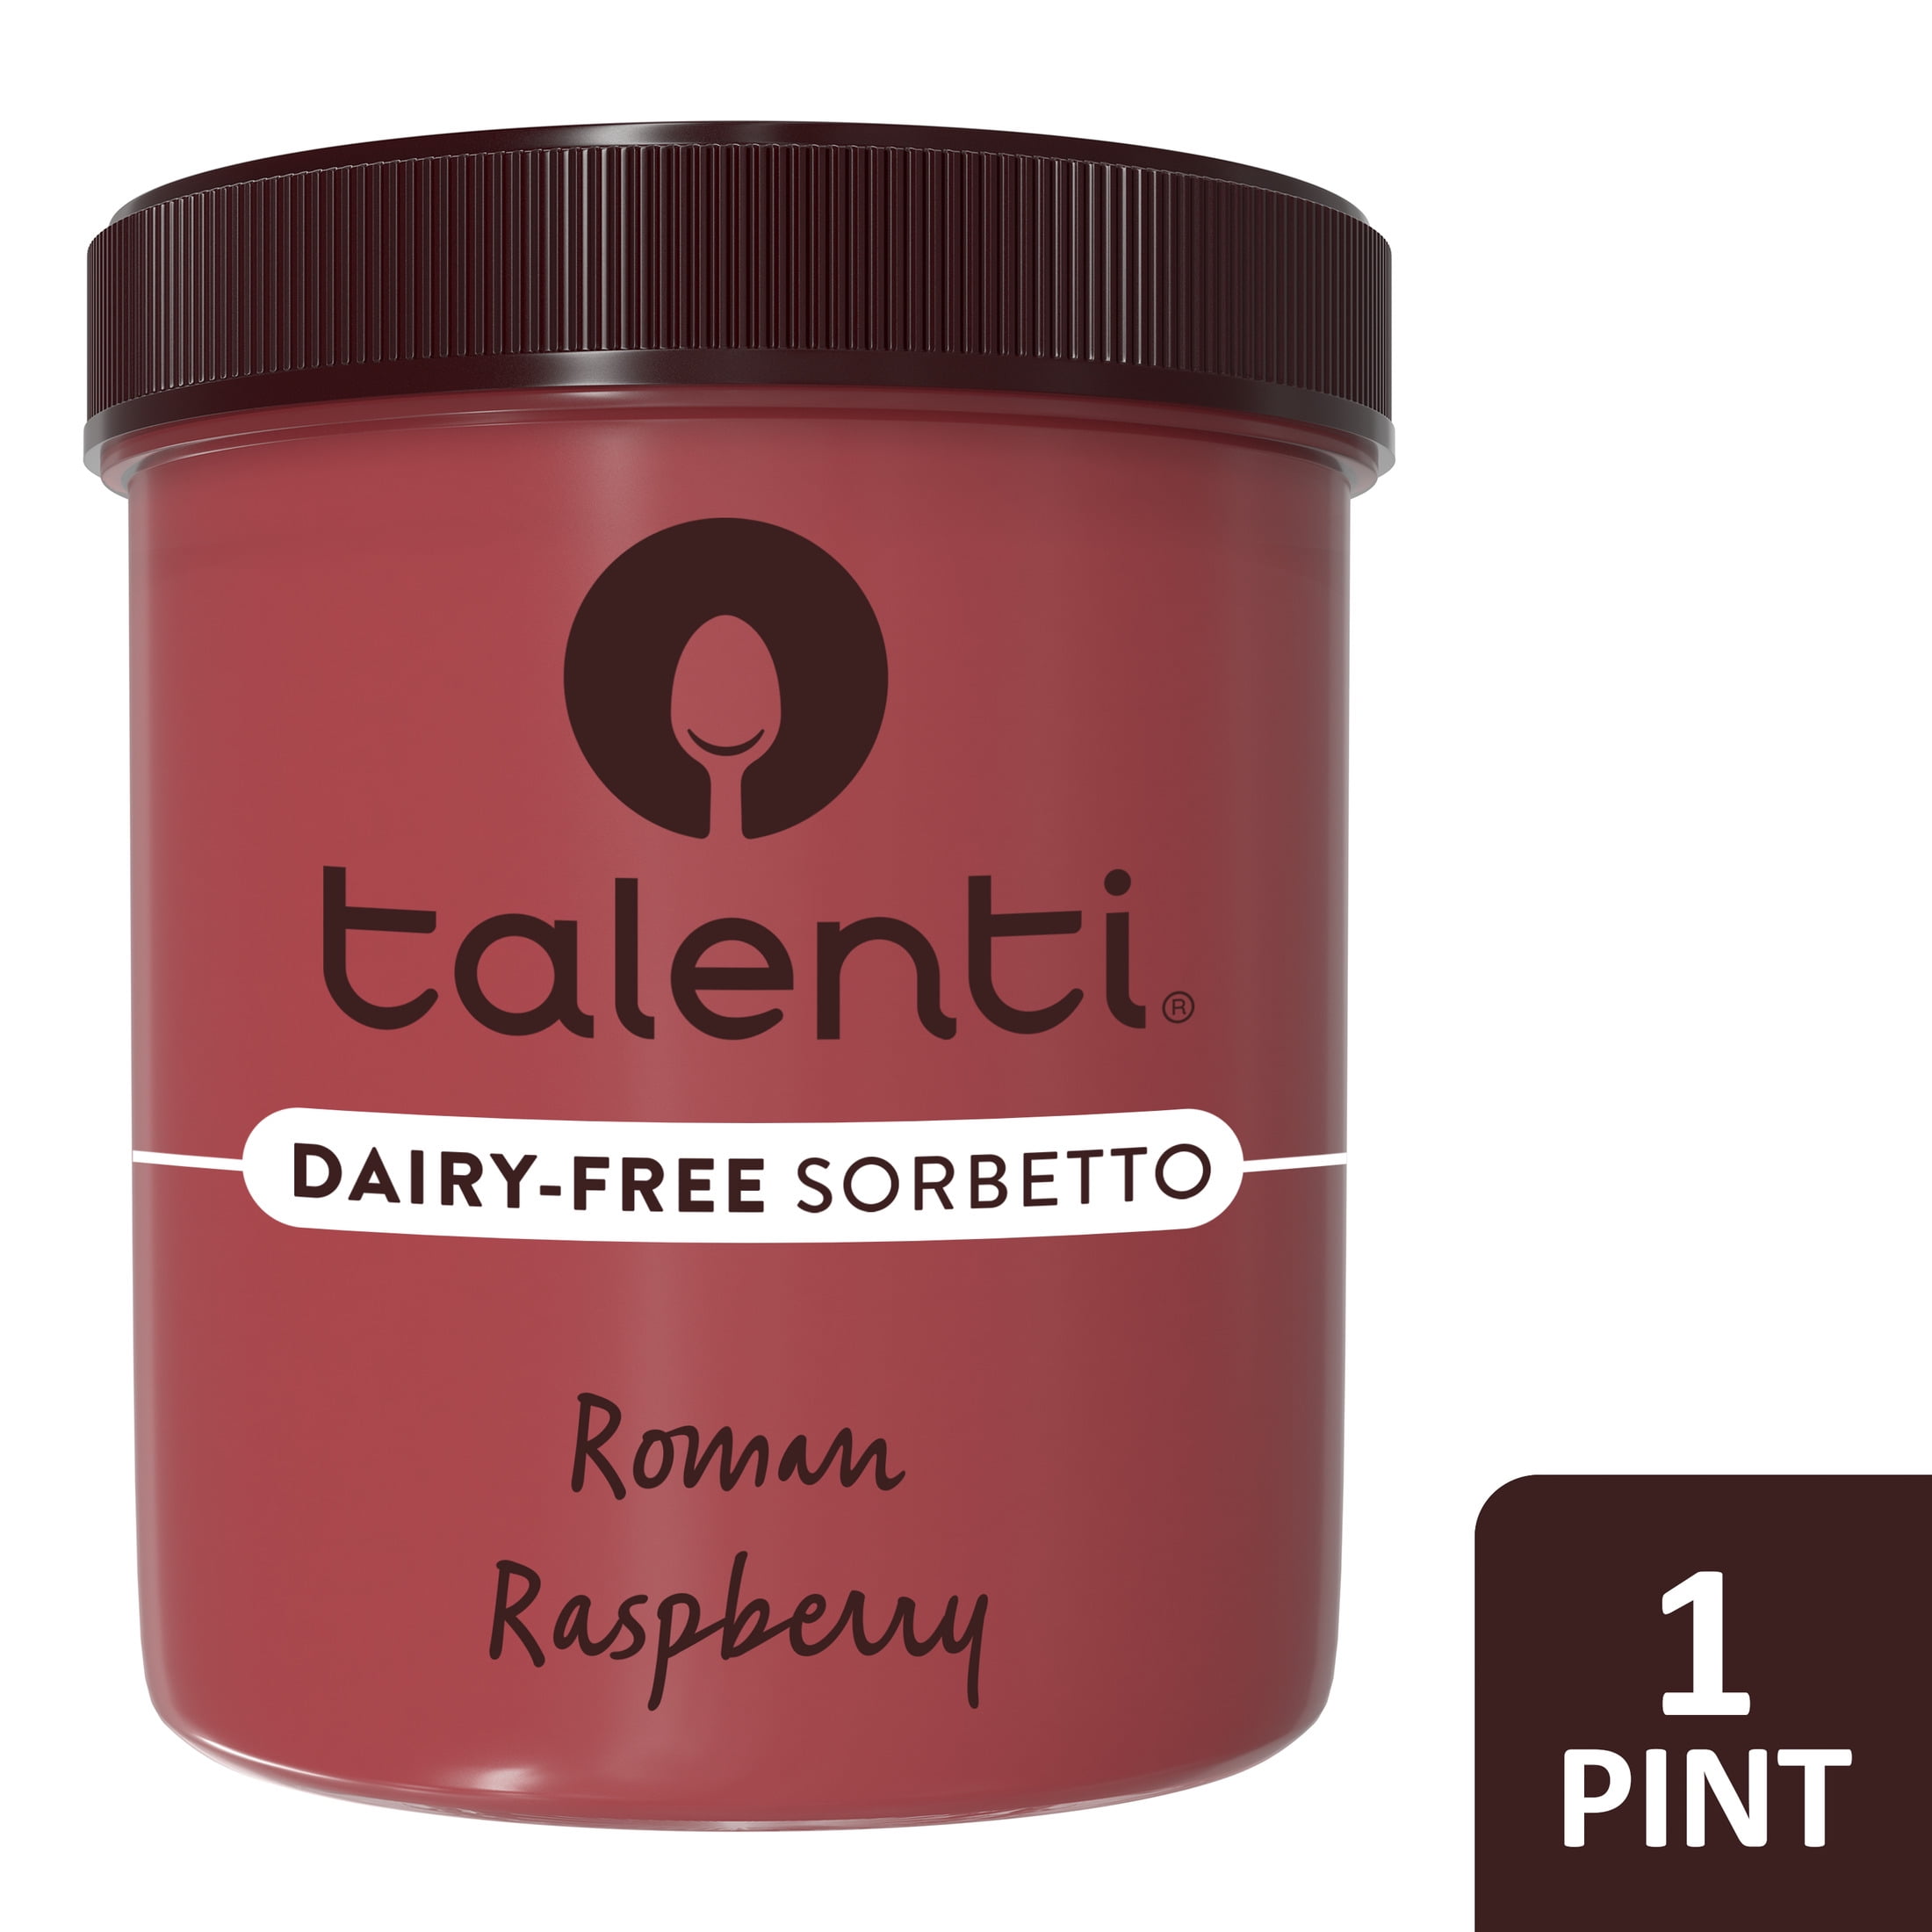 Talenti Sorbetto For a Delicious Non-Dairy Ice Cream Alternative Roman Raspberry Made With Non-GMO Ingredients 1 pint